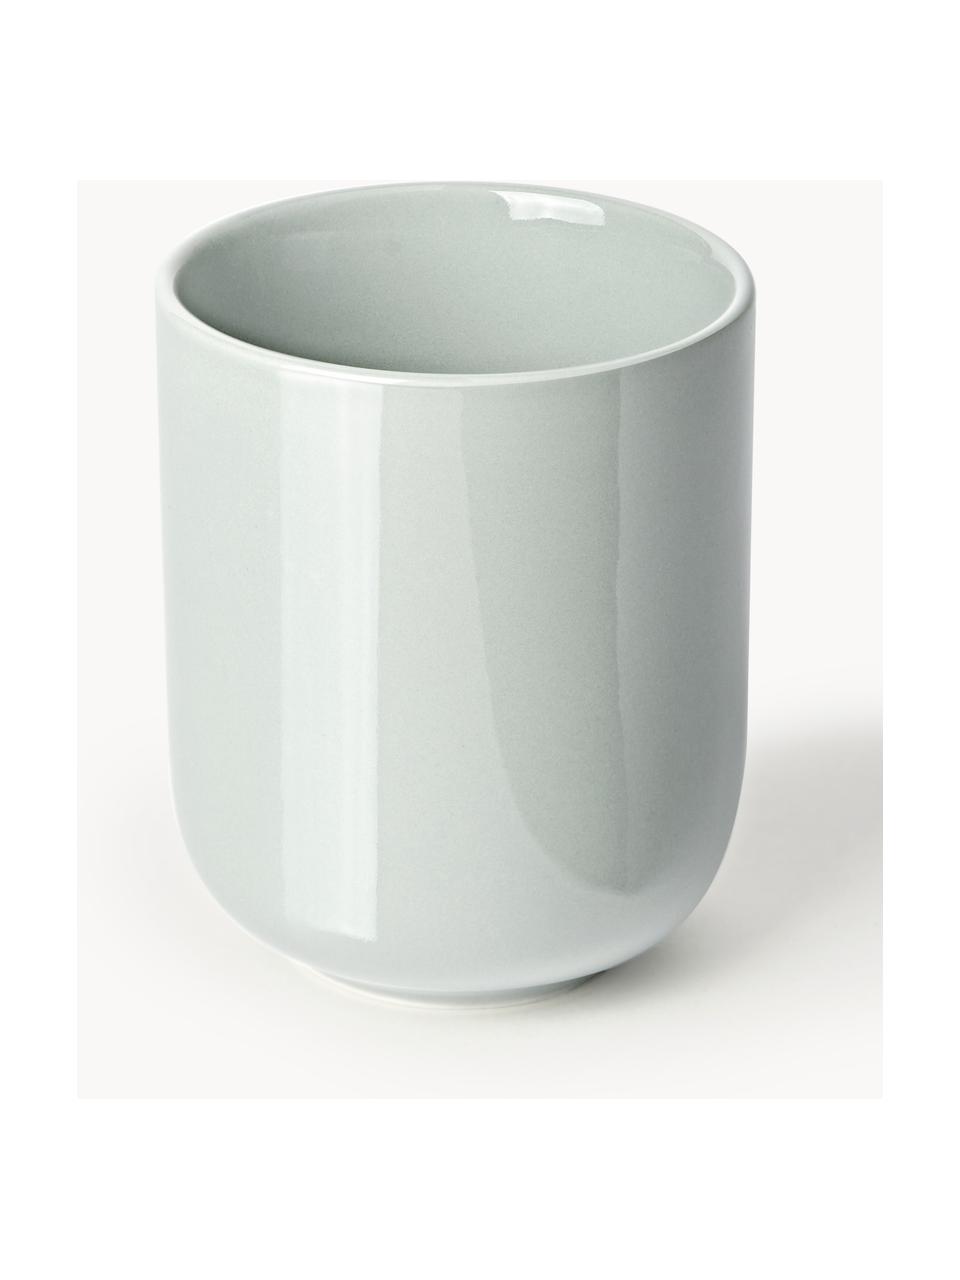 Porzellan-Kaffeebecher Nessa, 4 Stück, Hochwertiges Hartporzellan, Hellgrau, glänzend, Ø 8 x H 10 cm, 200 ml